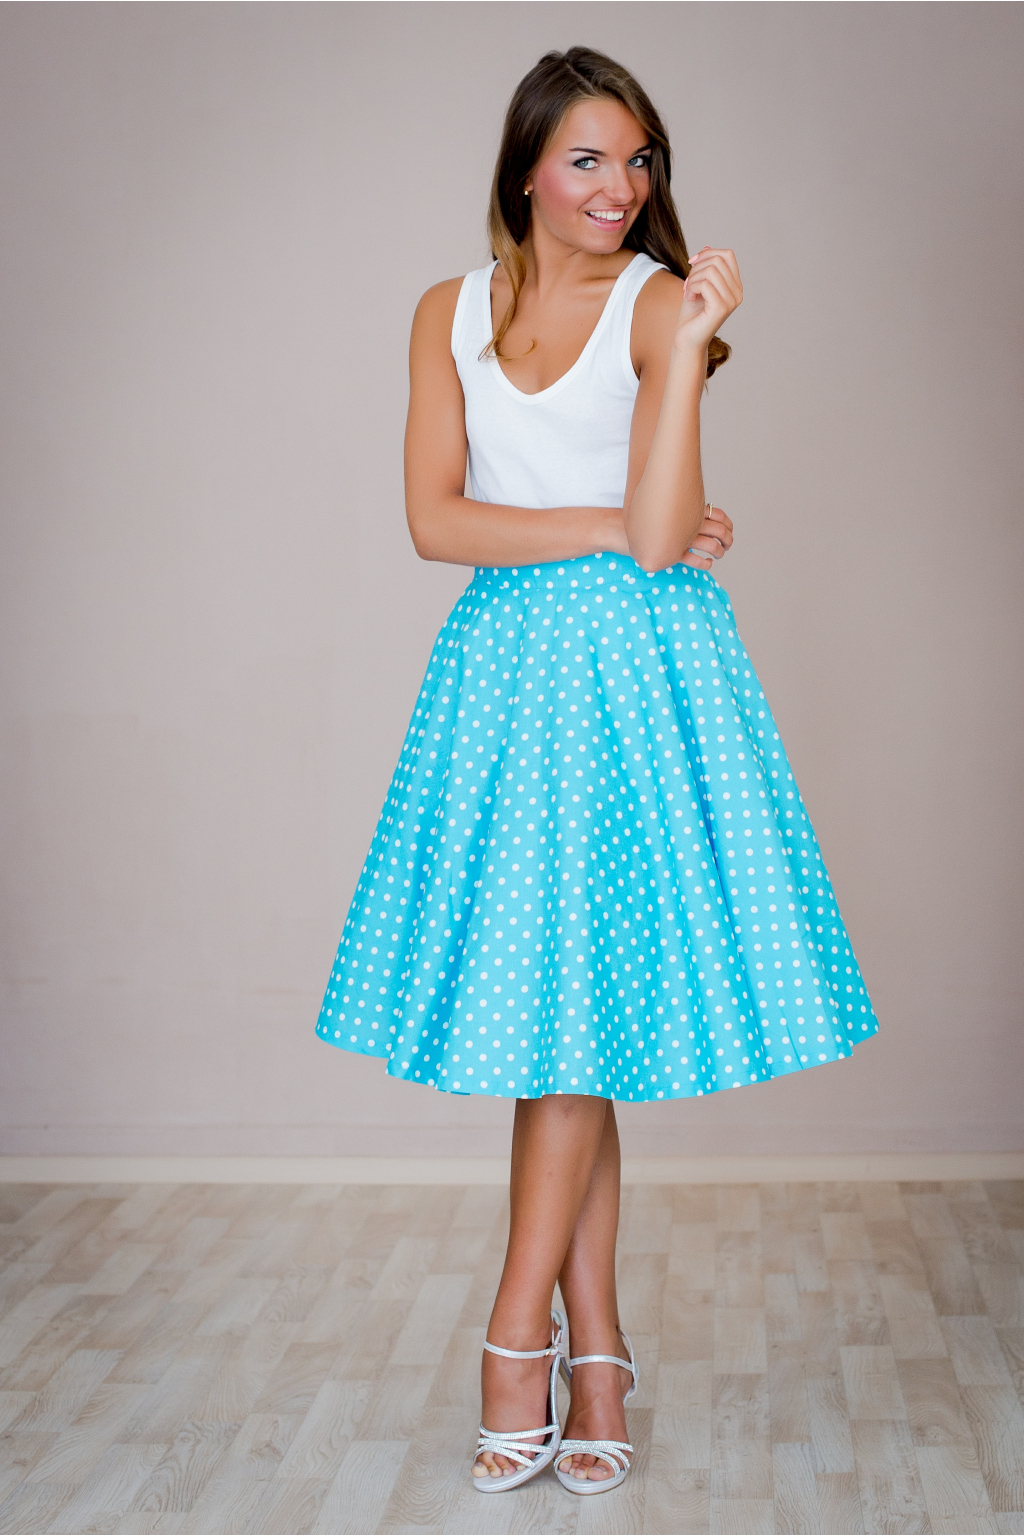 Kolová sukně modrá s puntíkem Barva jako na obrázku, Na zakázku - pas > 90cm + 200Kč